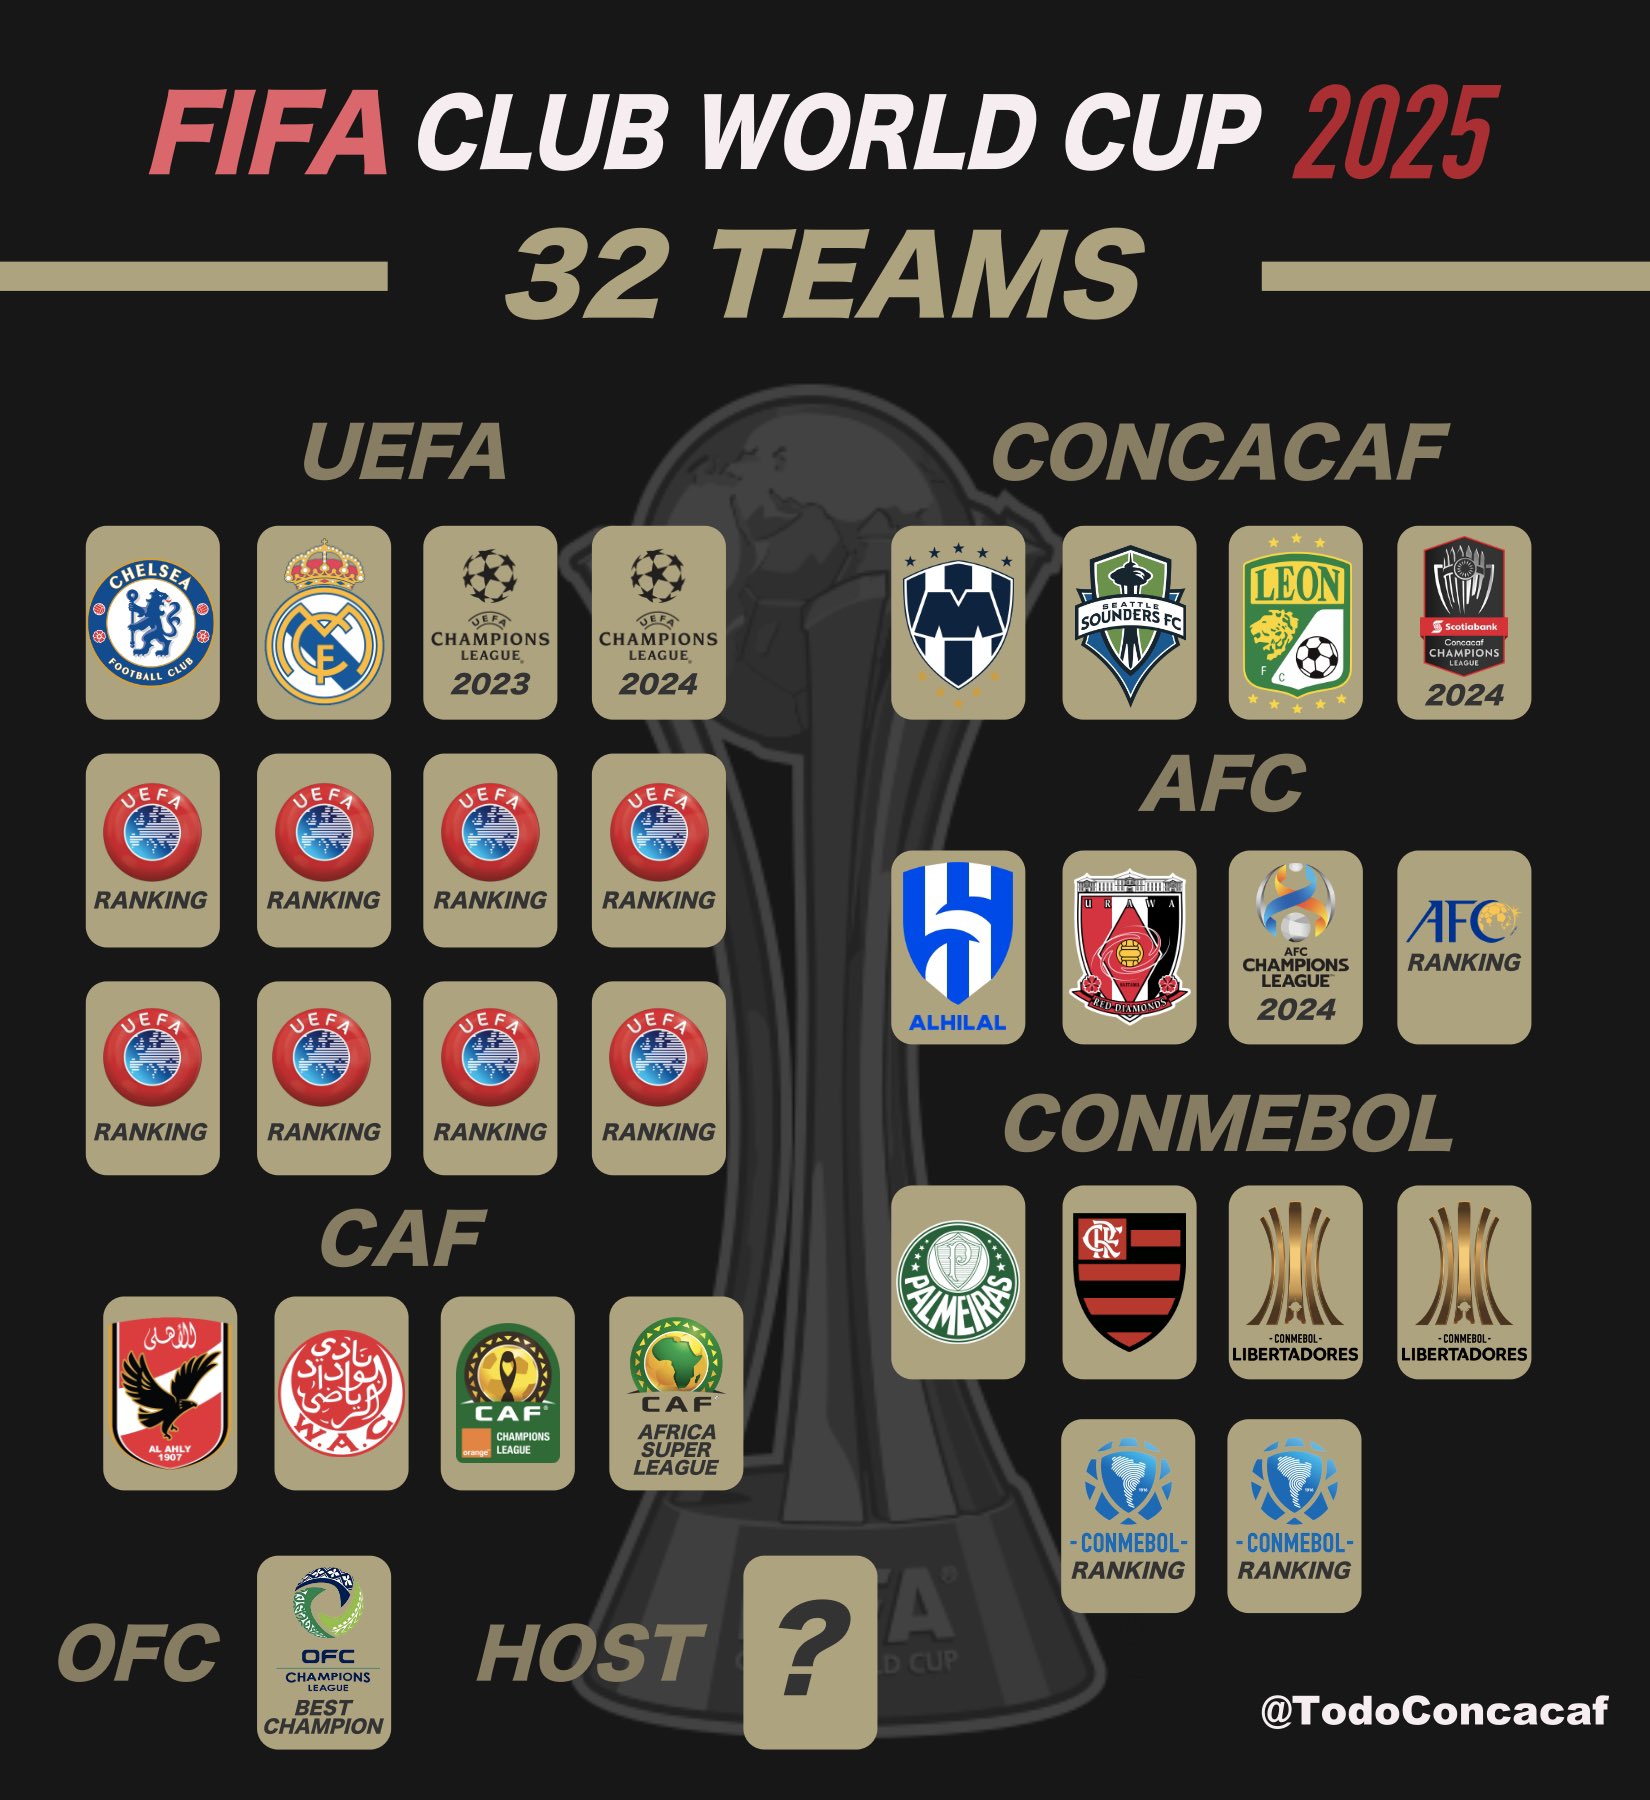 Estos serían los clubes que clasificarían al Mundial de Clubes 2025 co